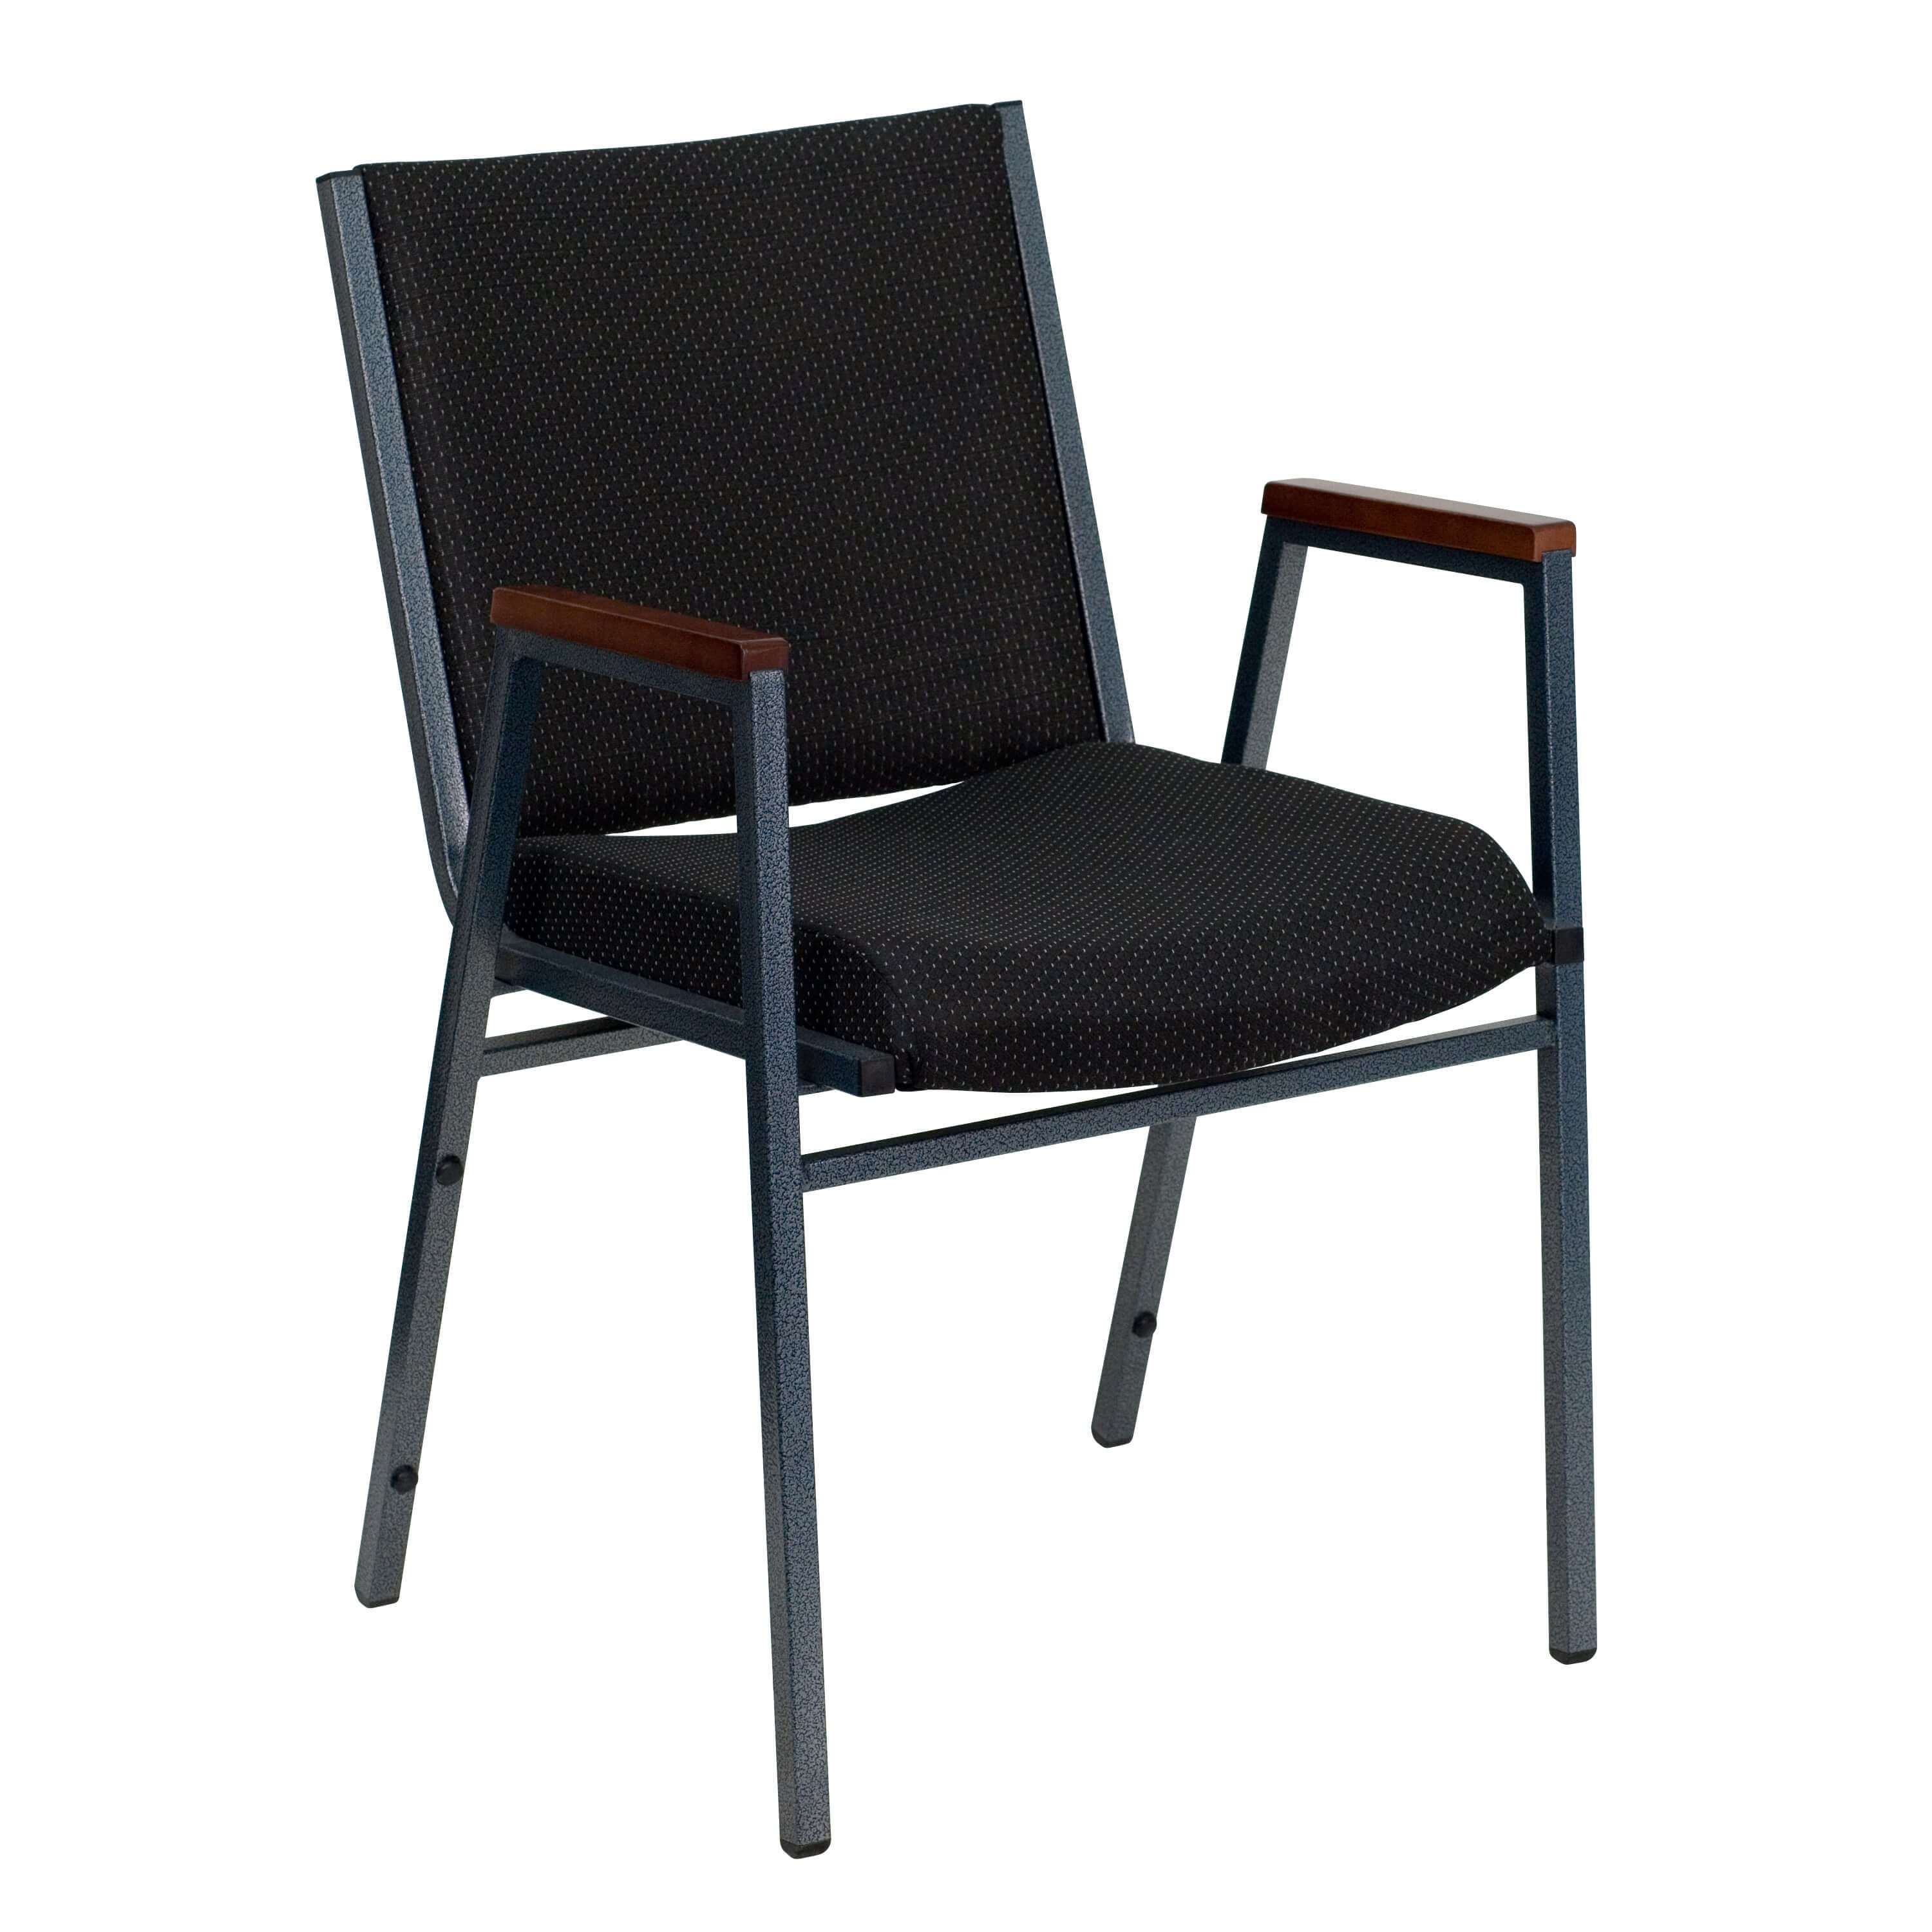 Stackable chairs CUB XU 60154 BK GG FLA